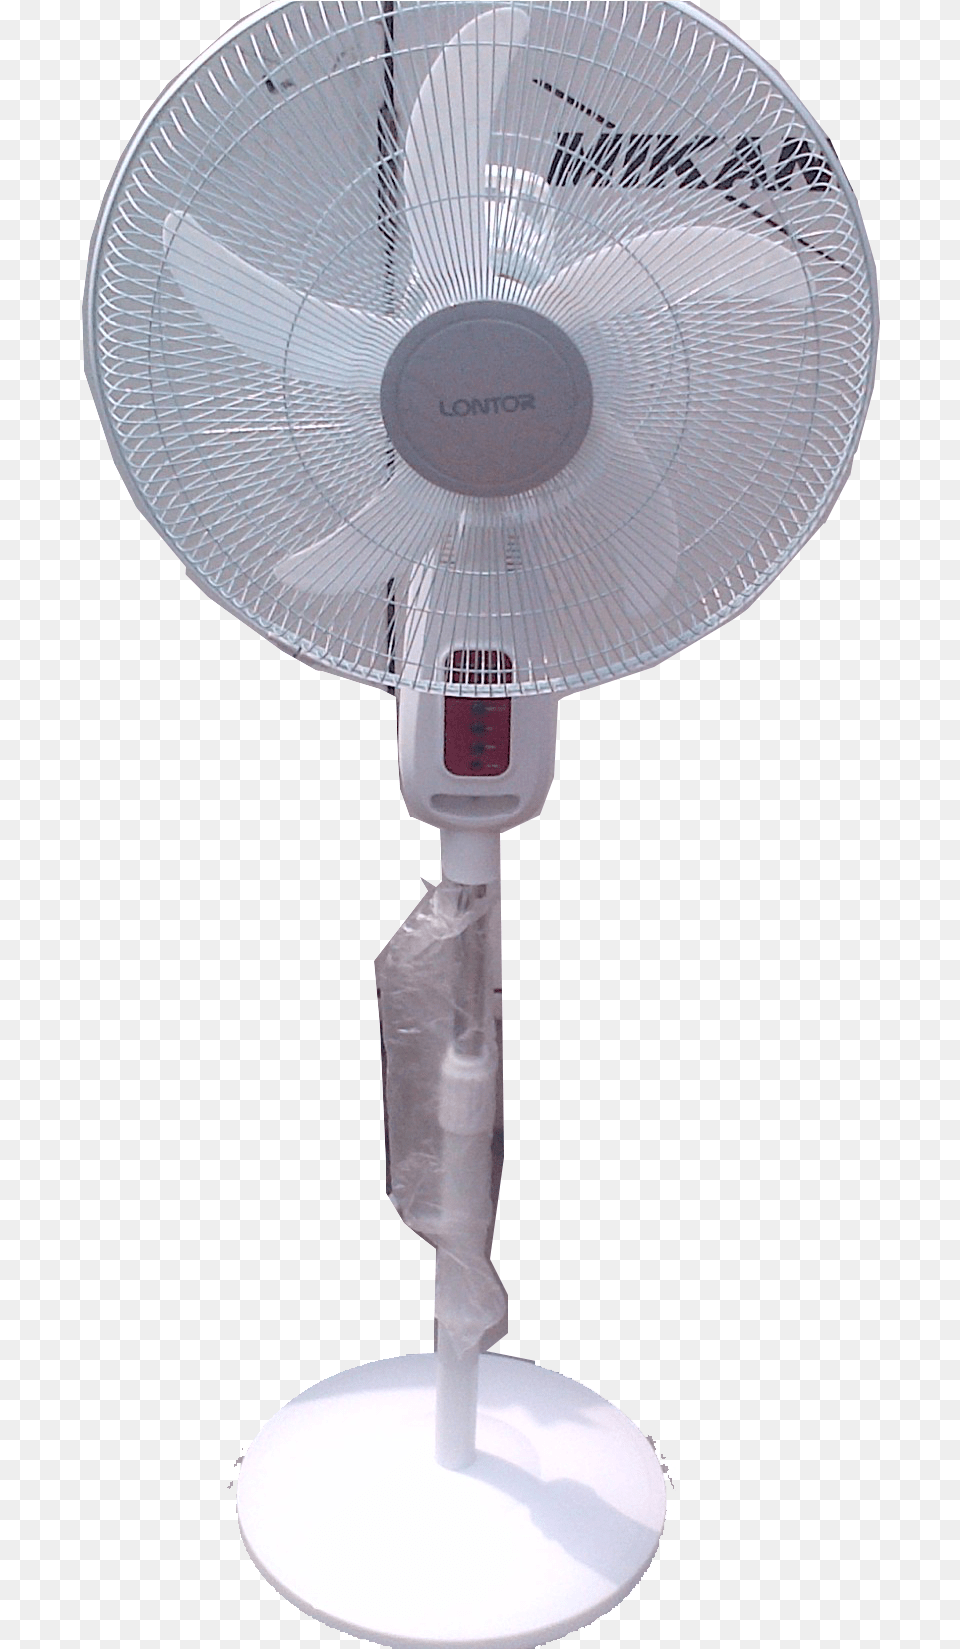 Lontor Rechargeable Standing Fan Mechanical Fan, Appliance, Device, Electrical Device, Electric Fan Png